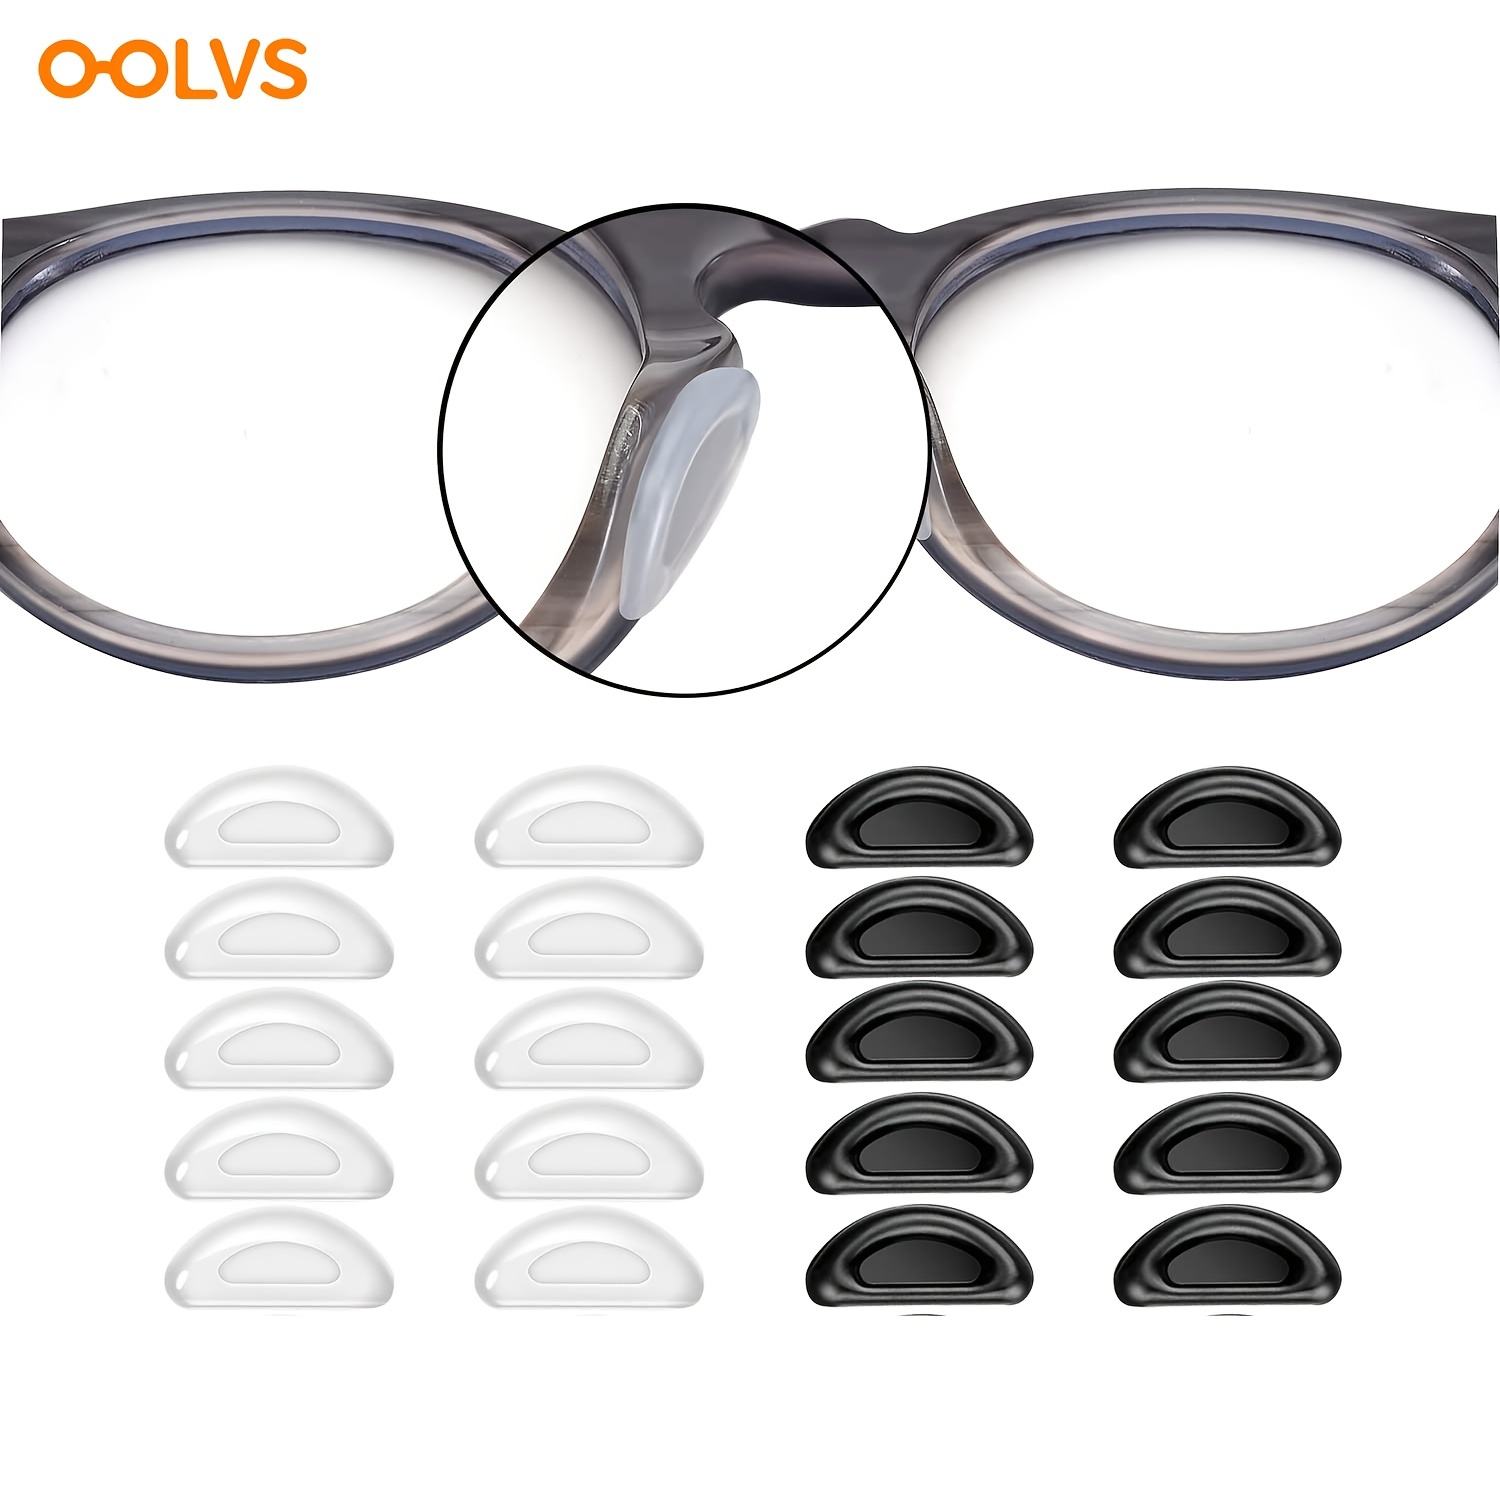 Adhäsive Anti-Rutsch Silikon Nasenpads für Brille Brille Brille